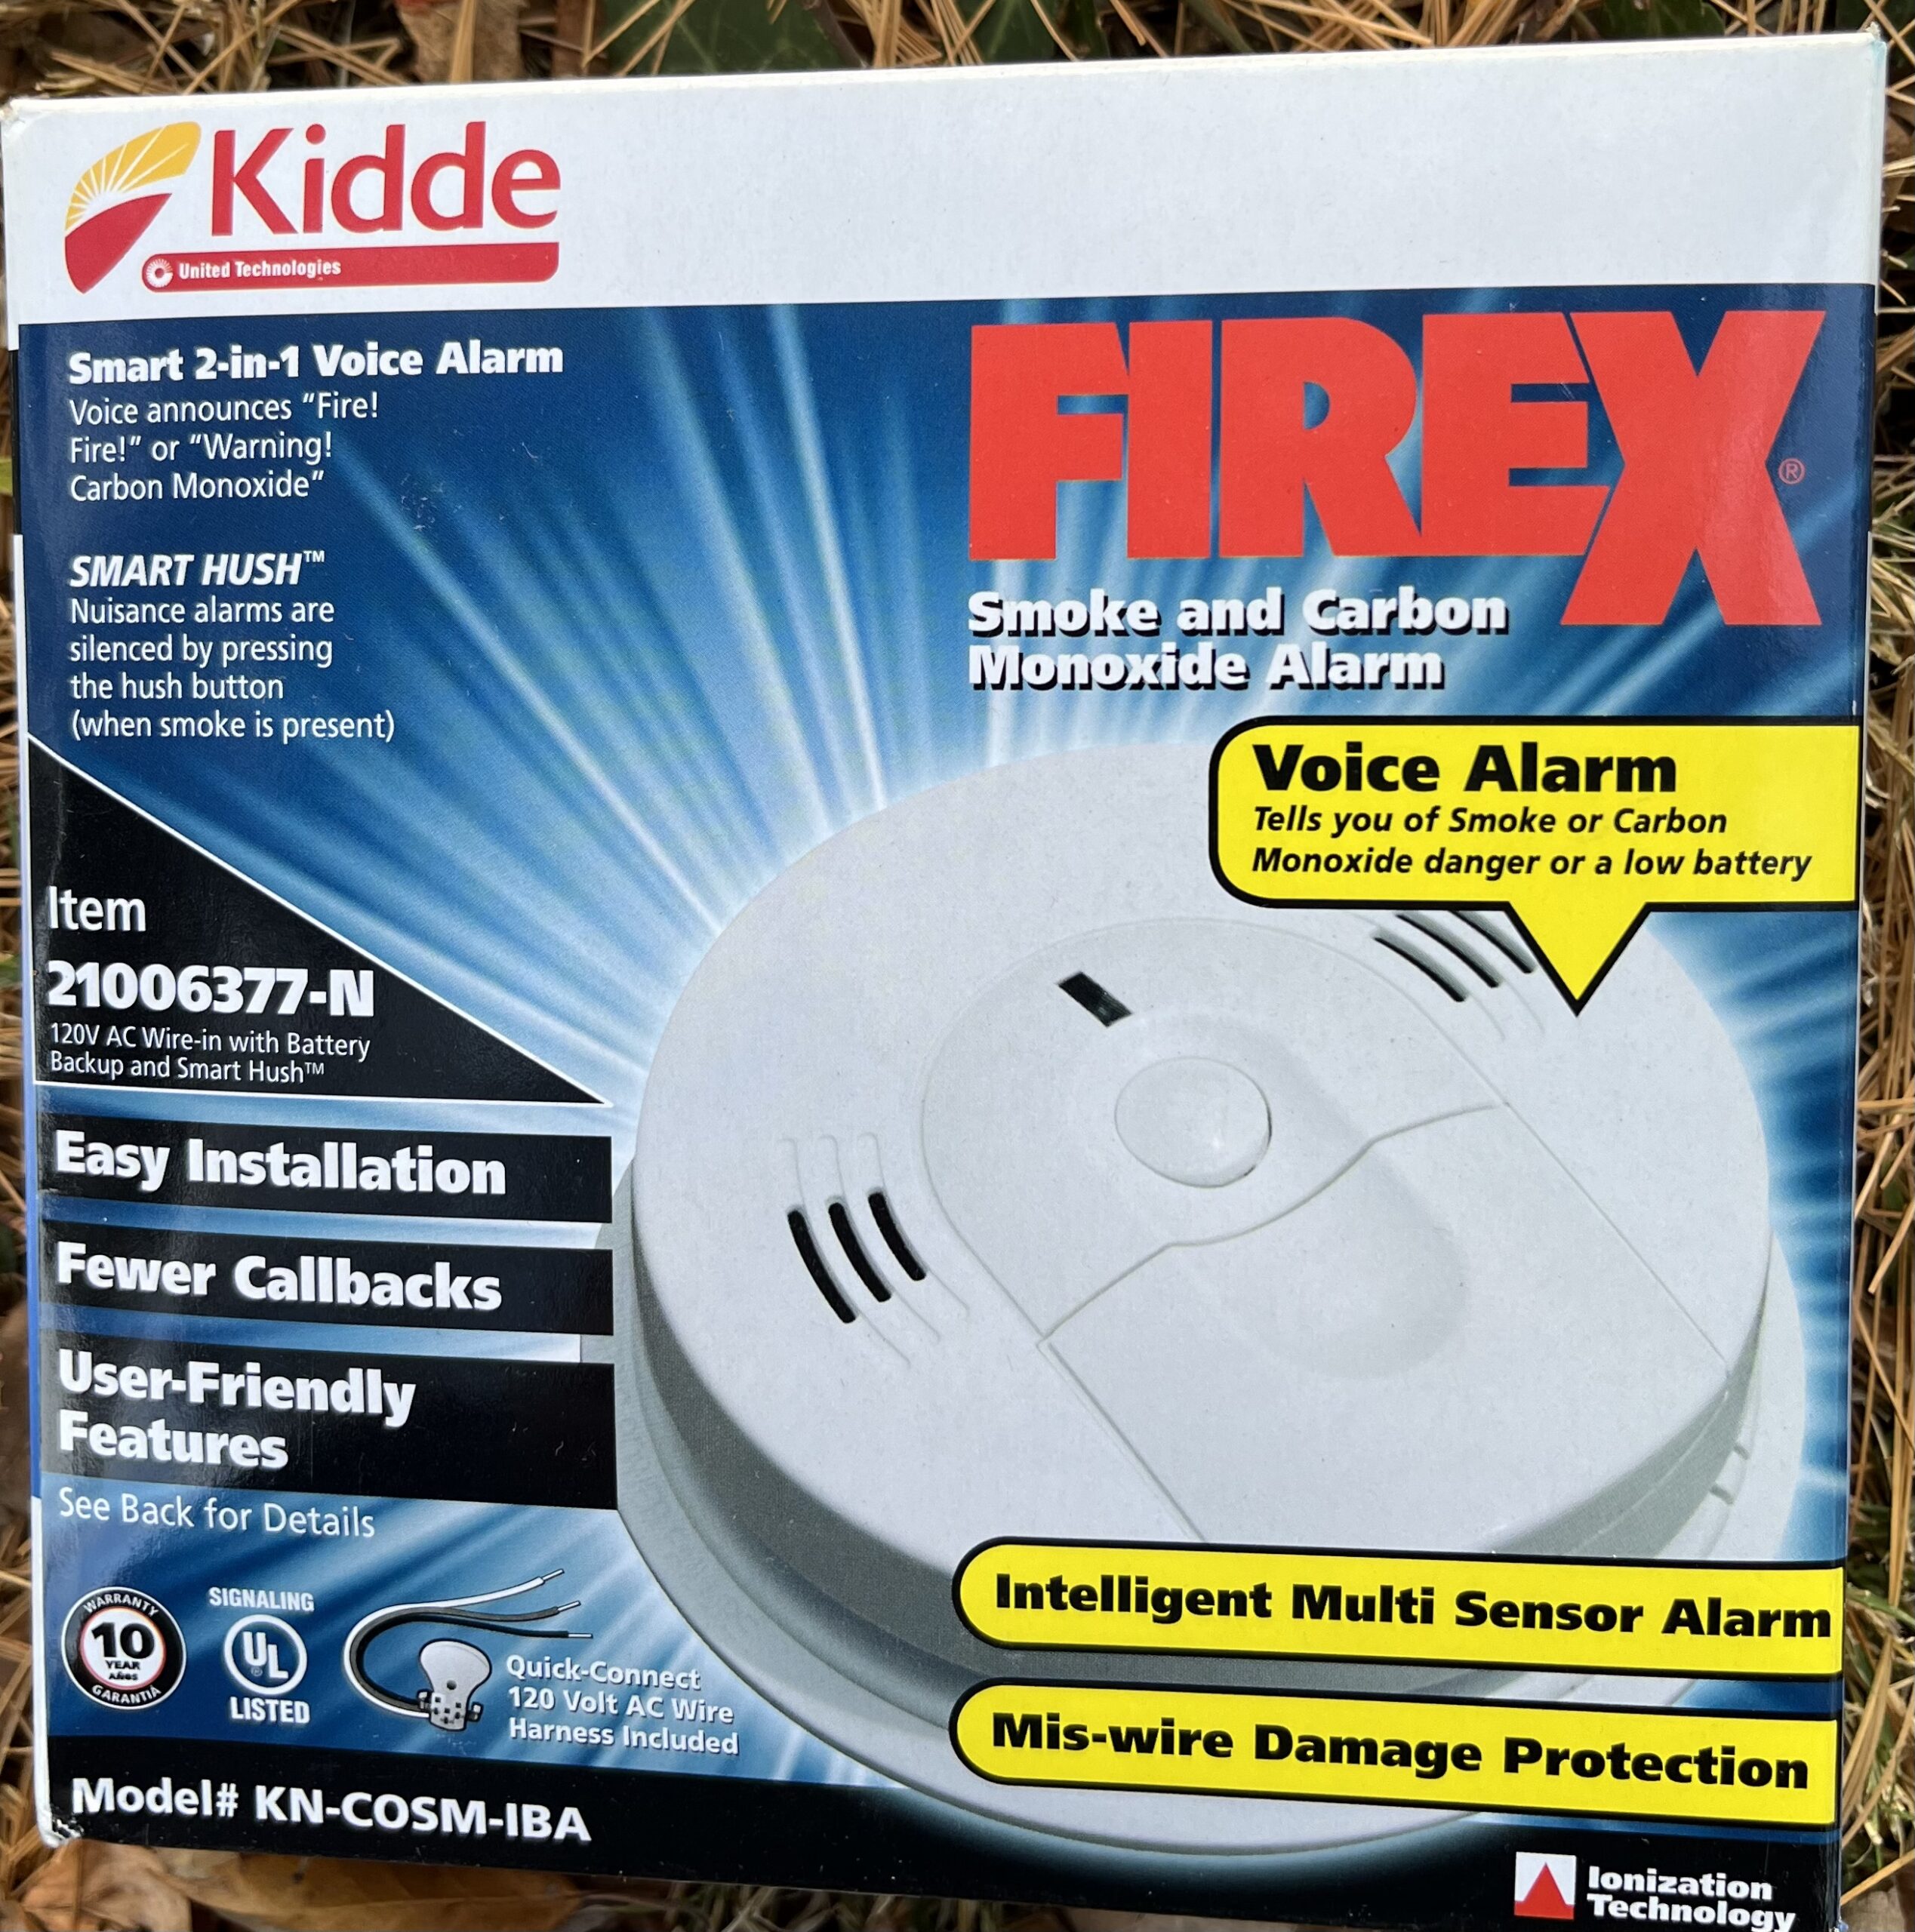 Item HG24 - Kidde Firex 2 in 1 Voice Alarm valued at $34